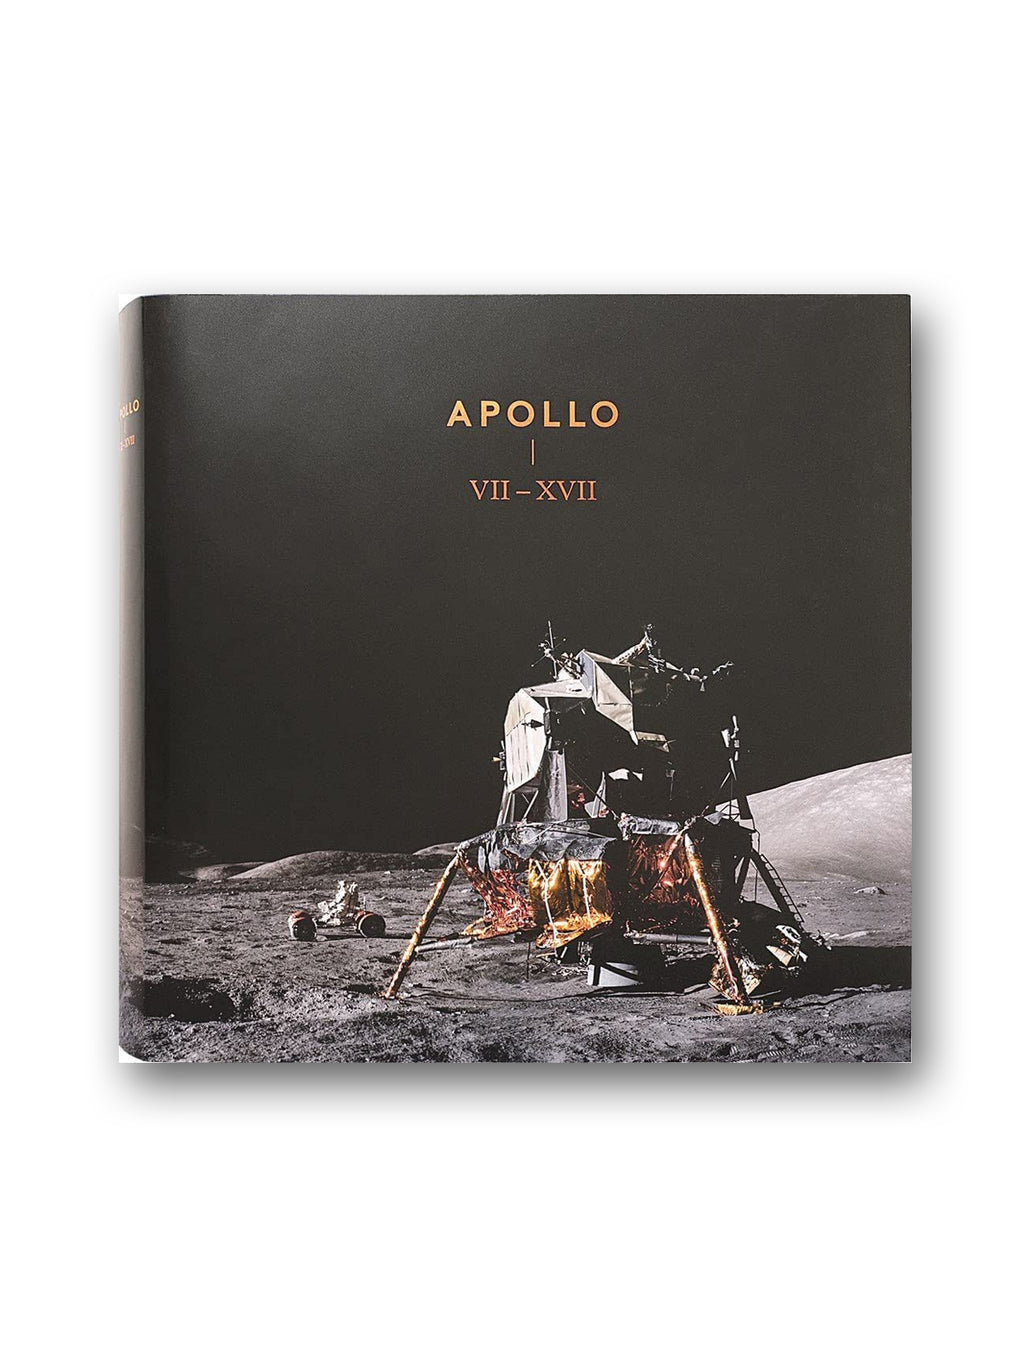 Apollo : VII - XVII